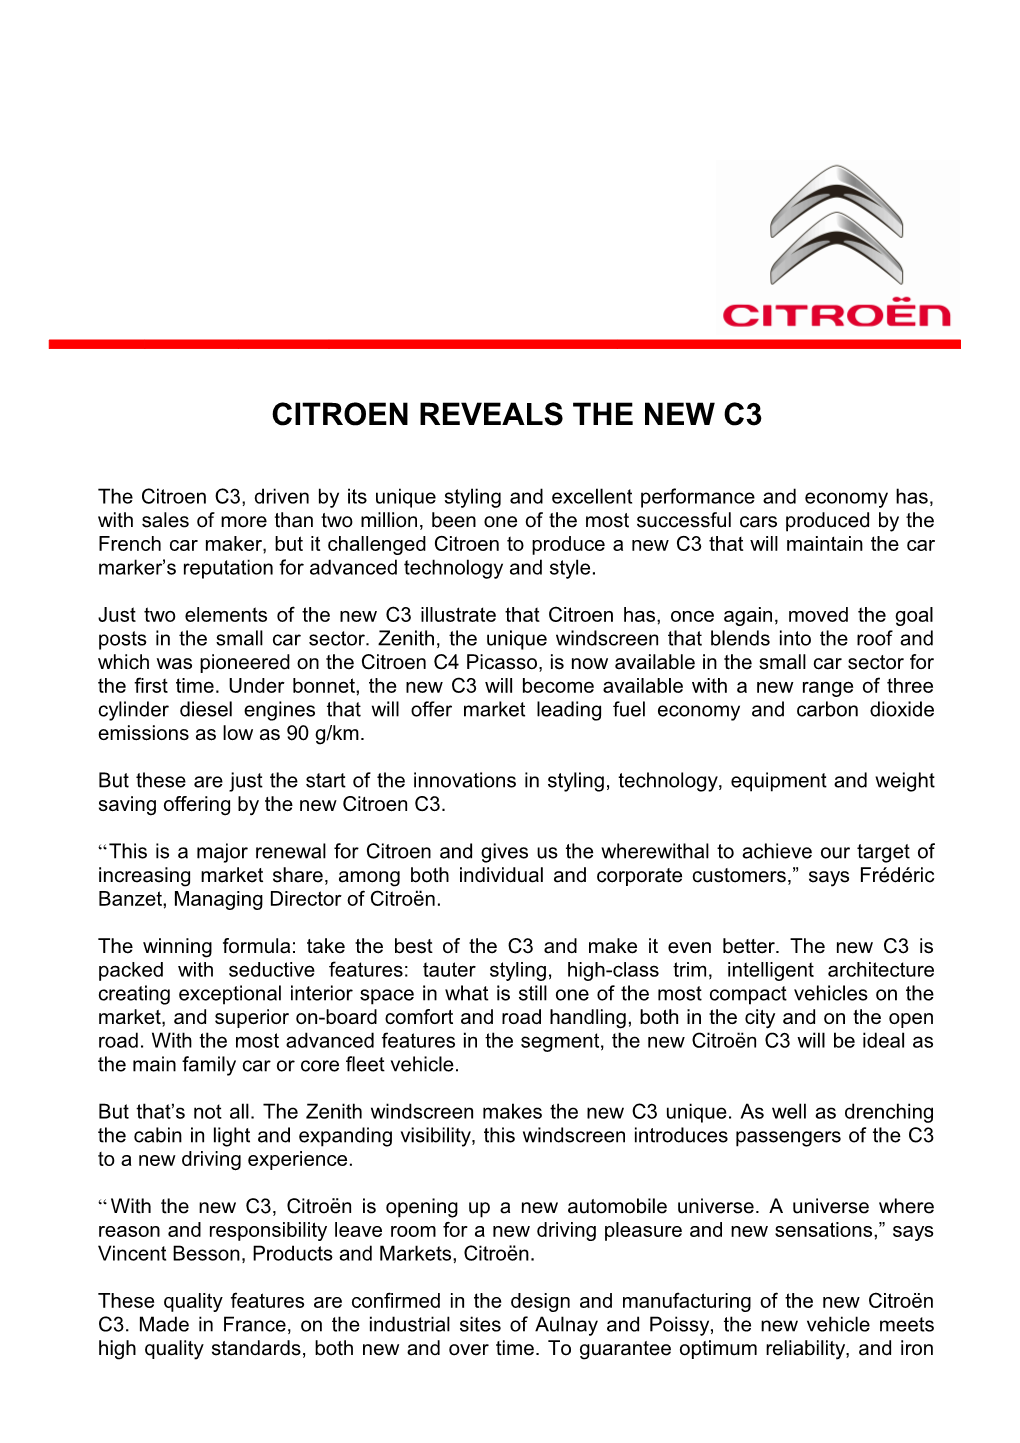 Citroen Reveals the New C3